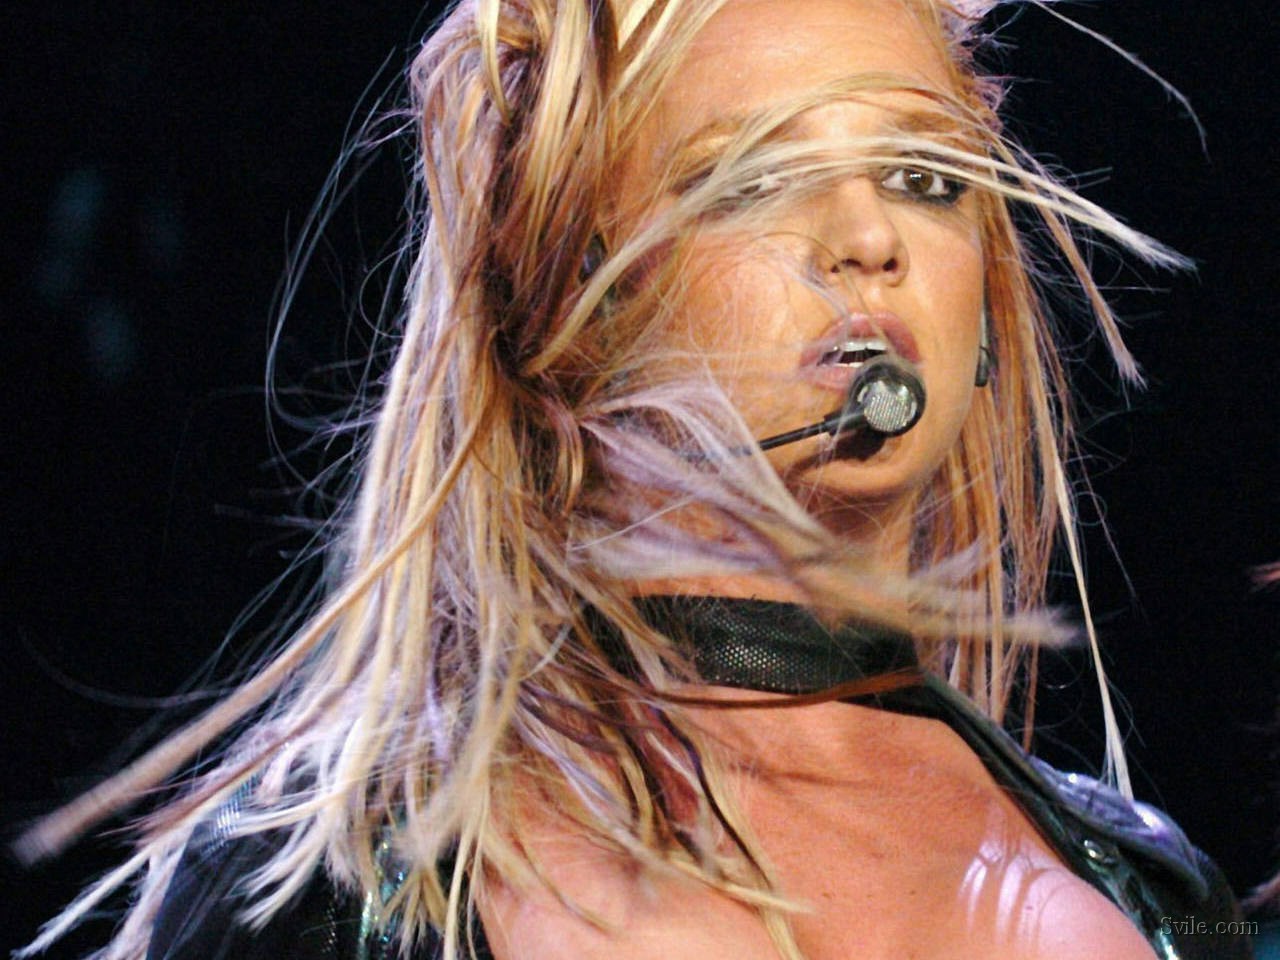 Brit - Britney Spears Wallpaper (31640001) - Fanpop